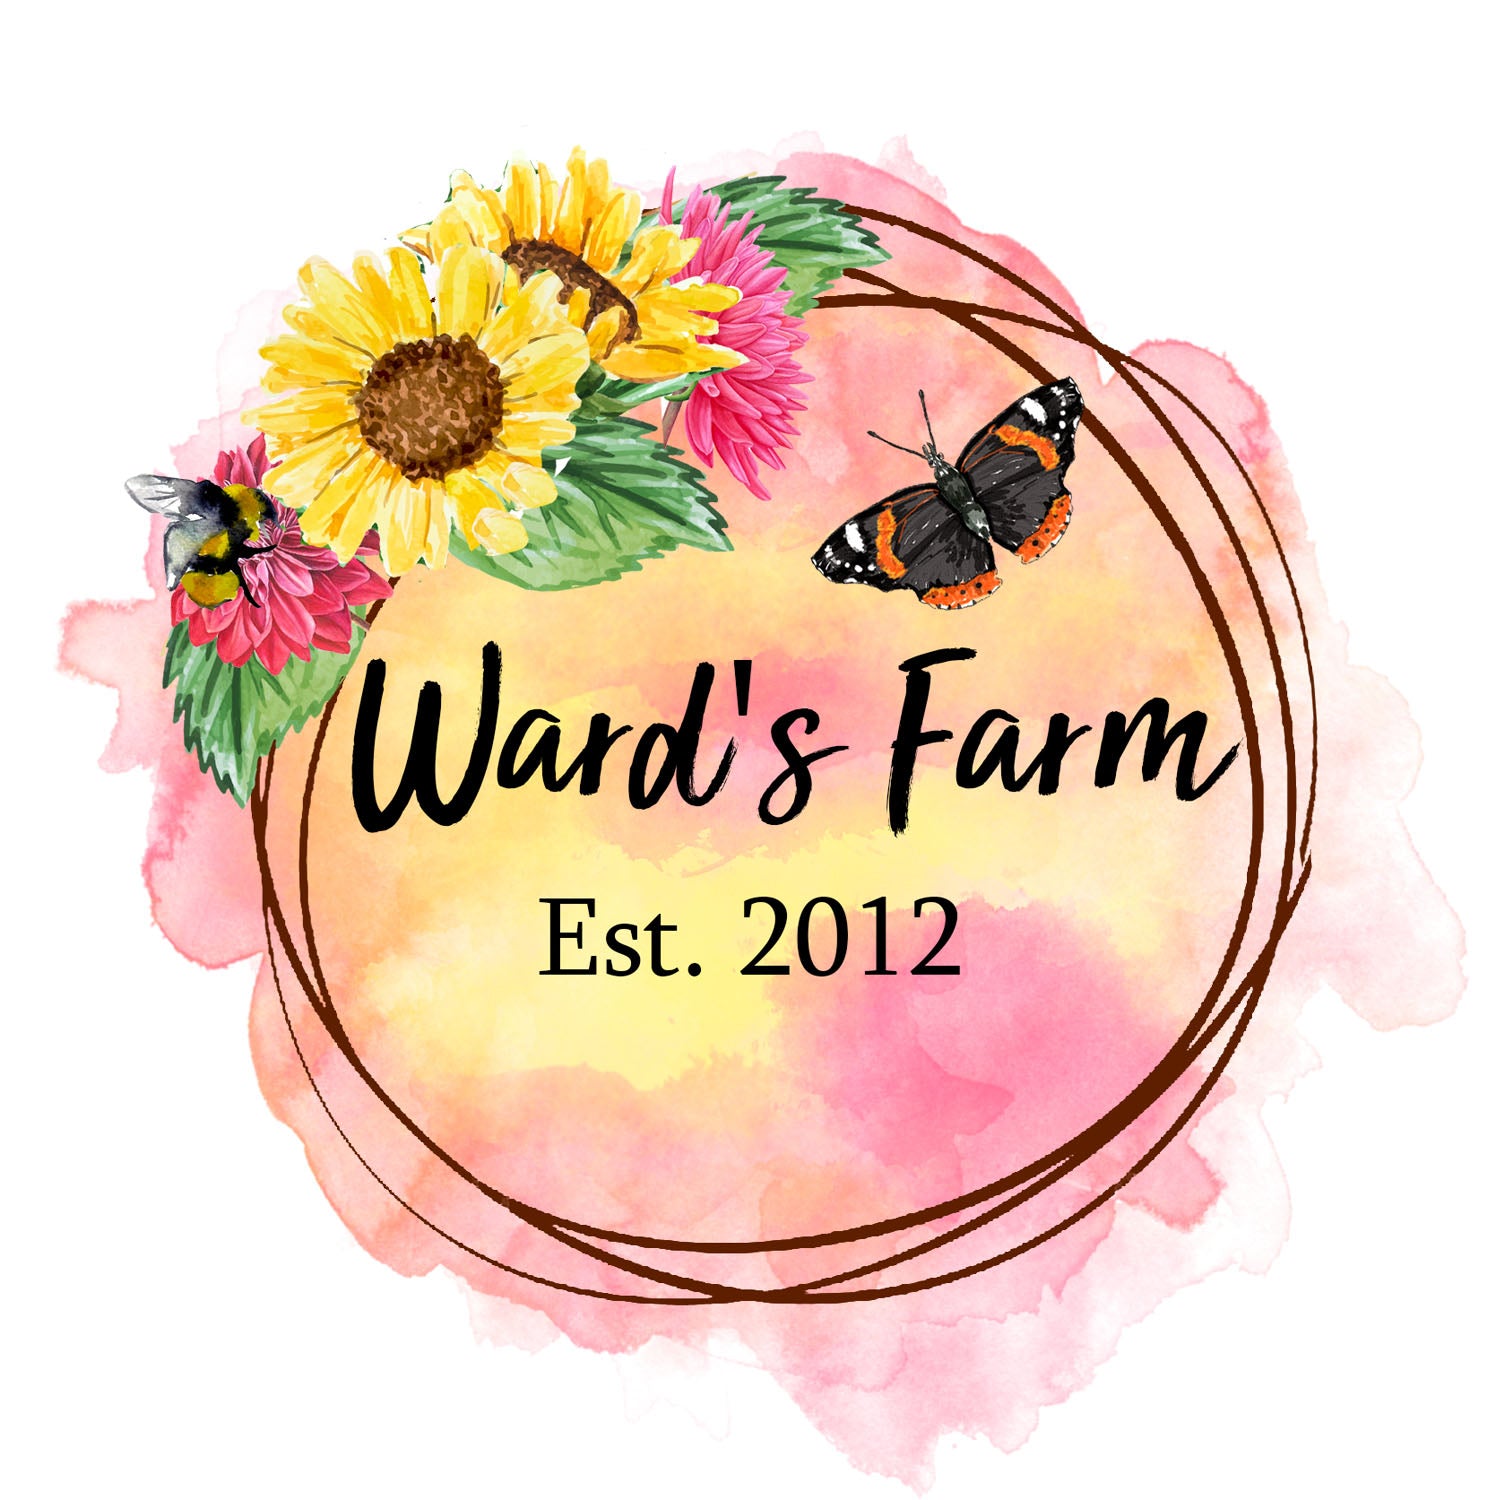 Ward's Farm